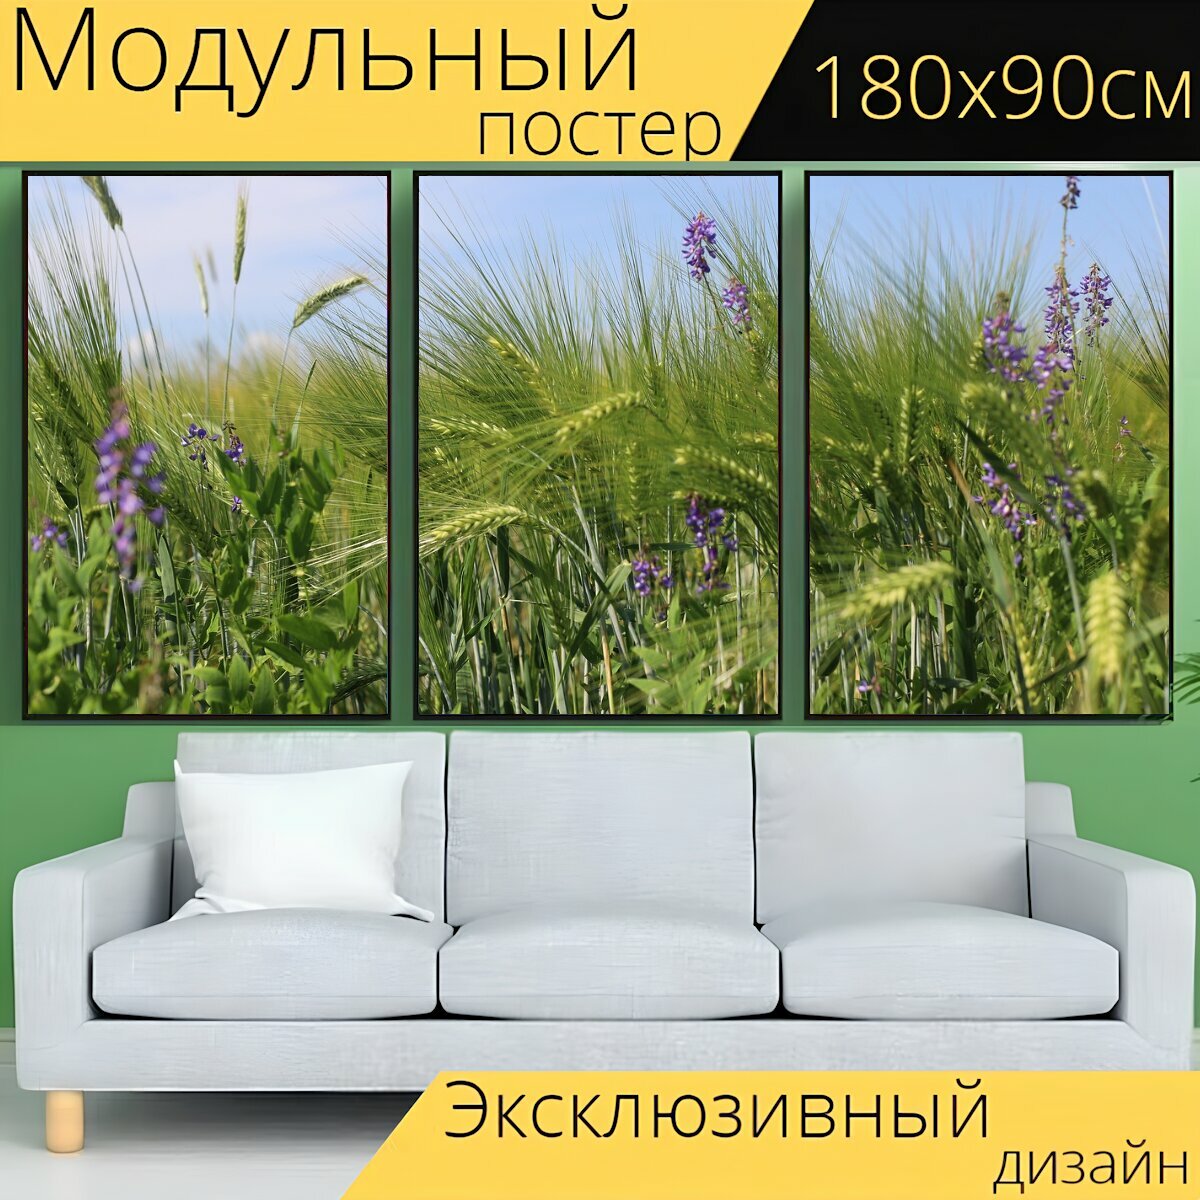 Модульный постер "Луг, цветы, полевые цветы" 180 x 90 см. для интерьера